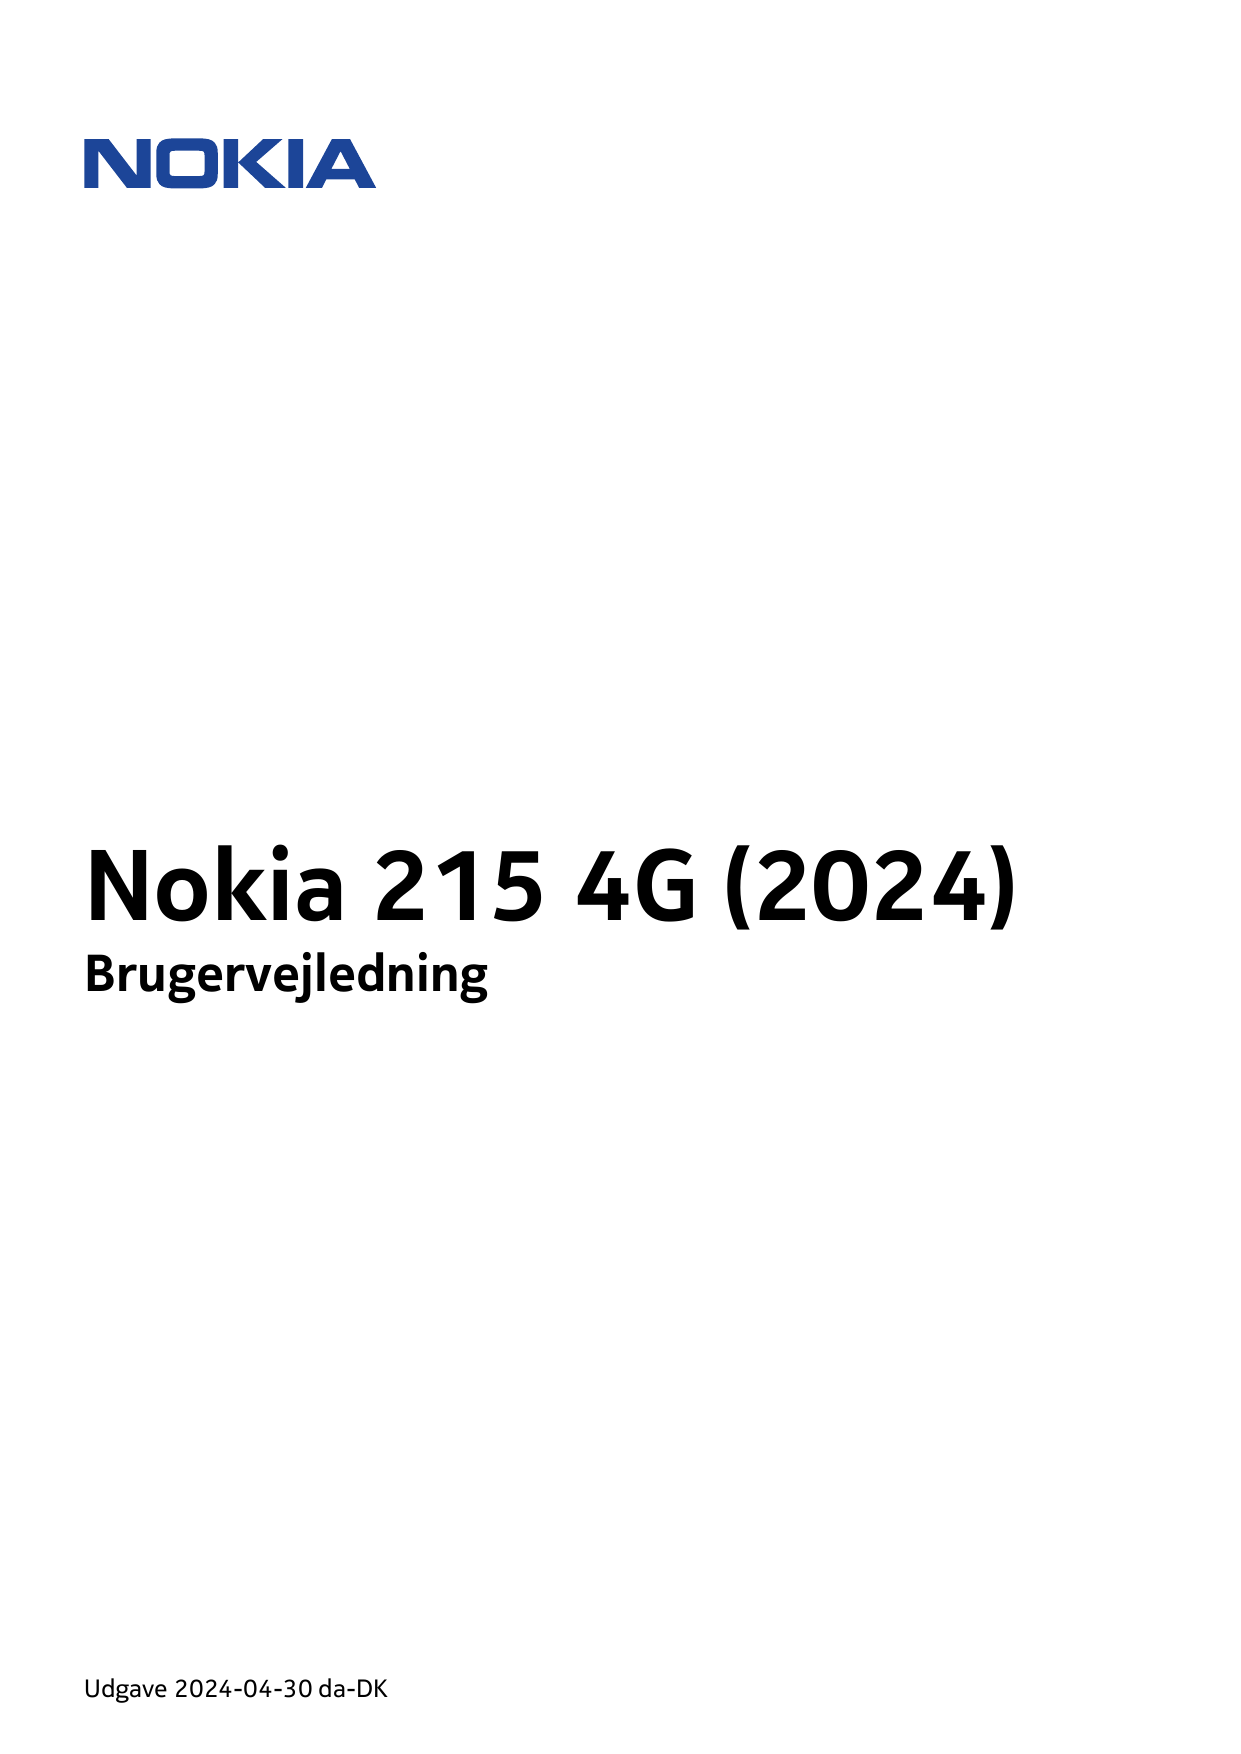 Nokia 215 4G (2024)BrugervejledningUdgave 2024-04-30 da-DK